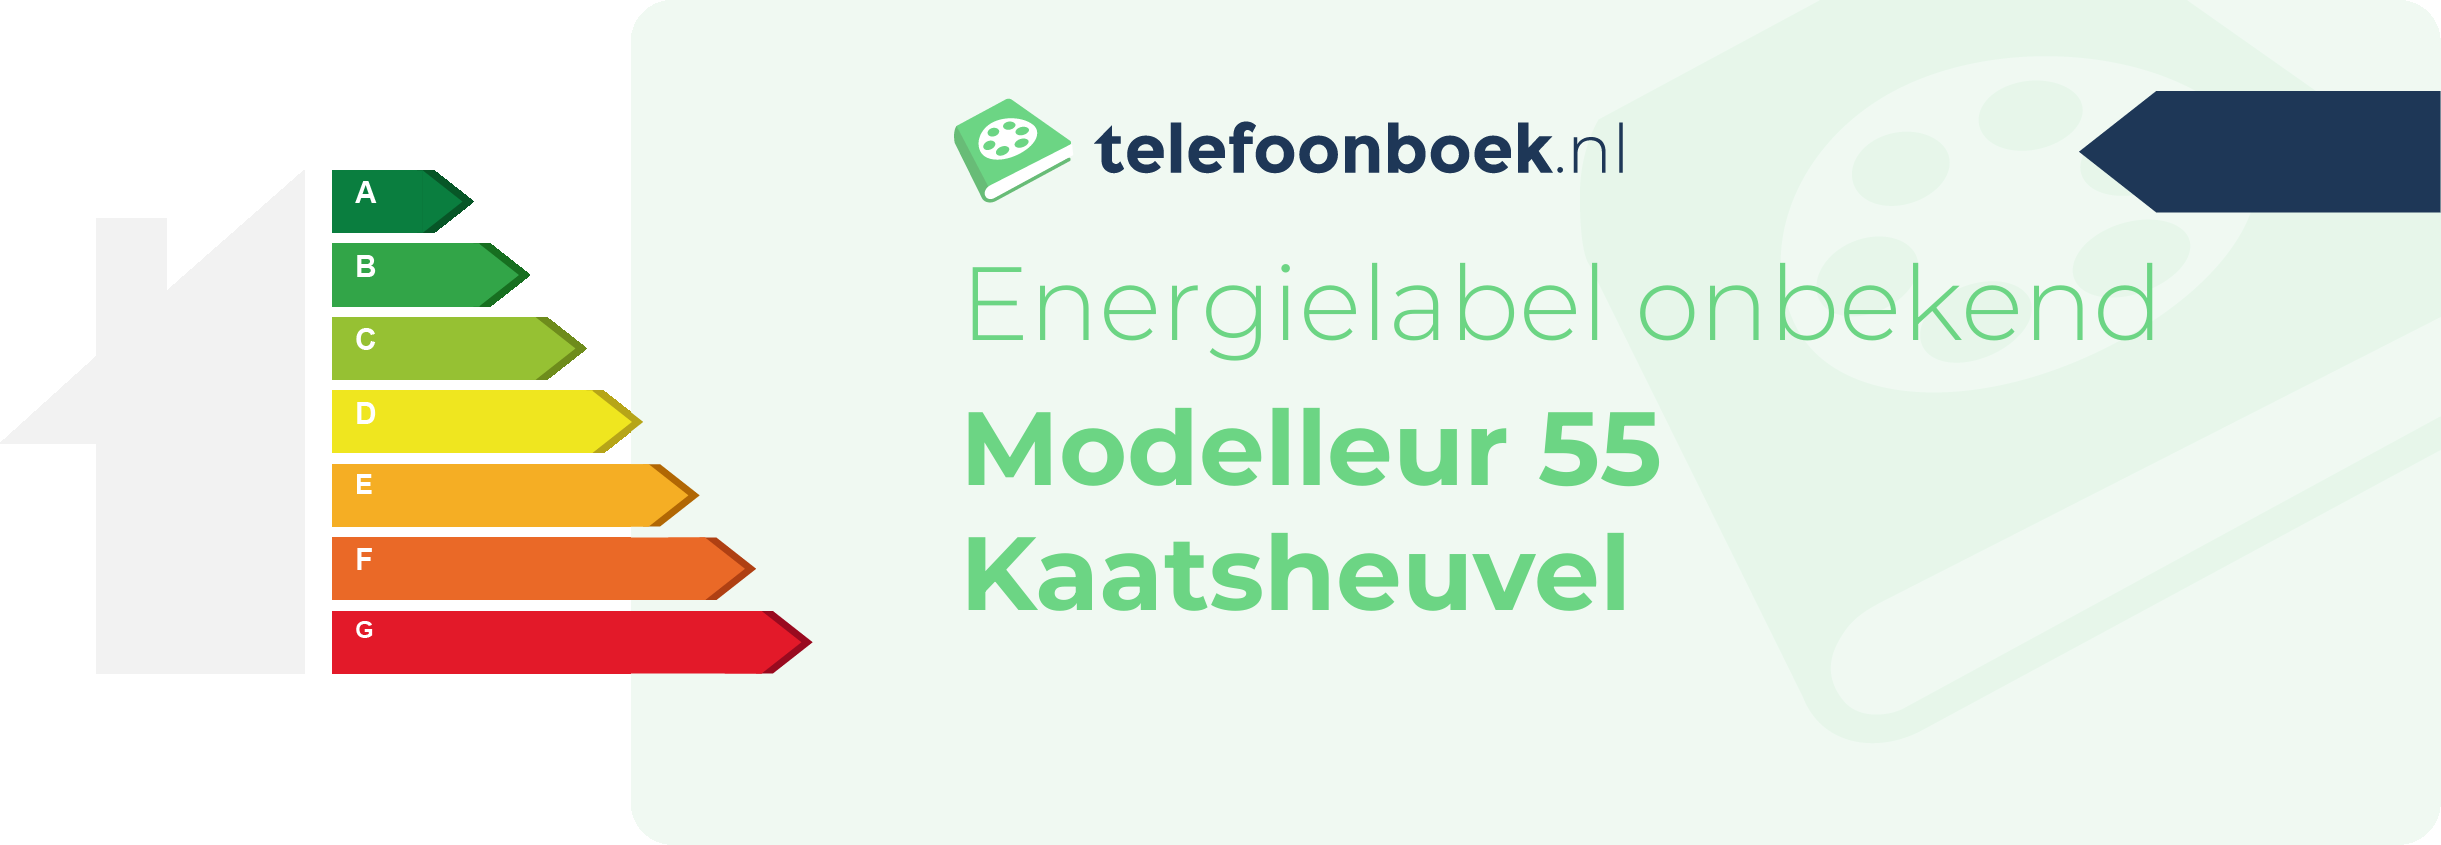 Energielabel Modelleur 55 Kaatsheuvel